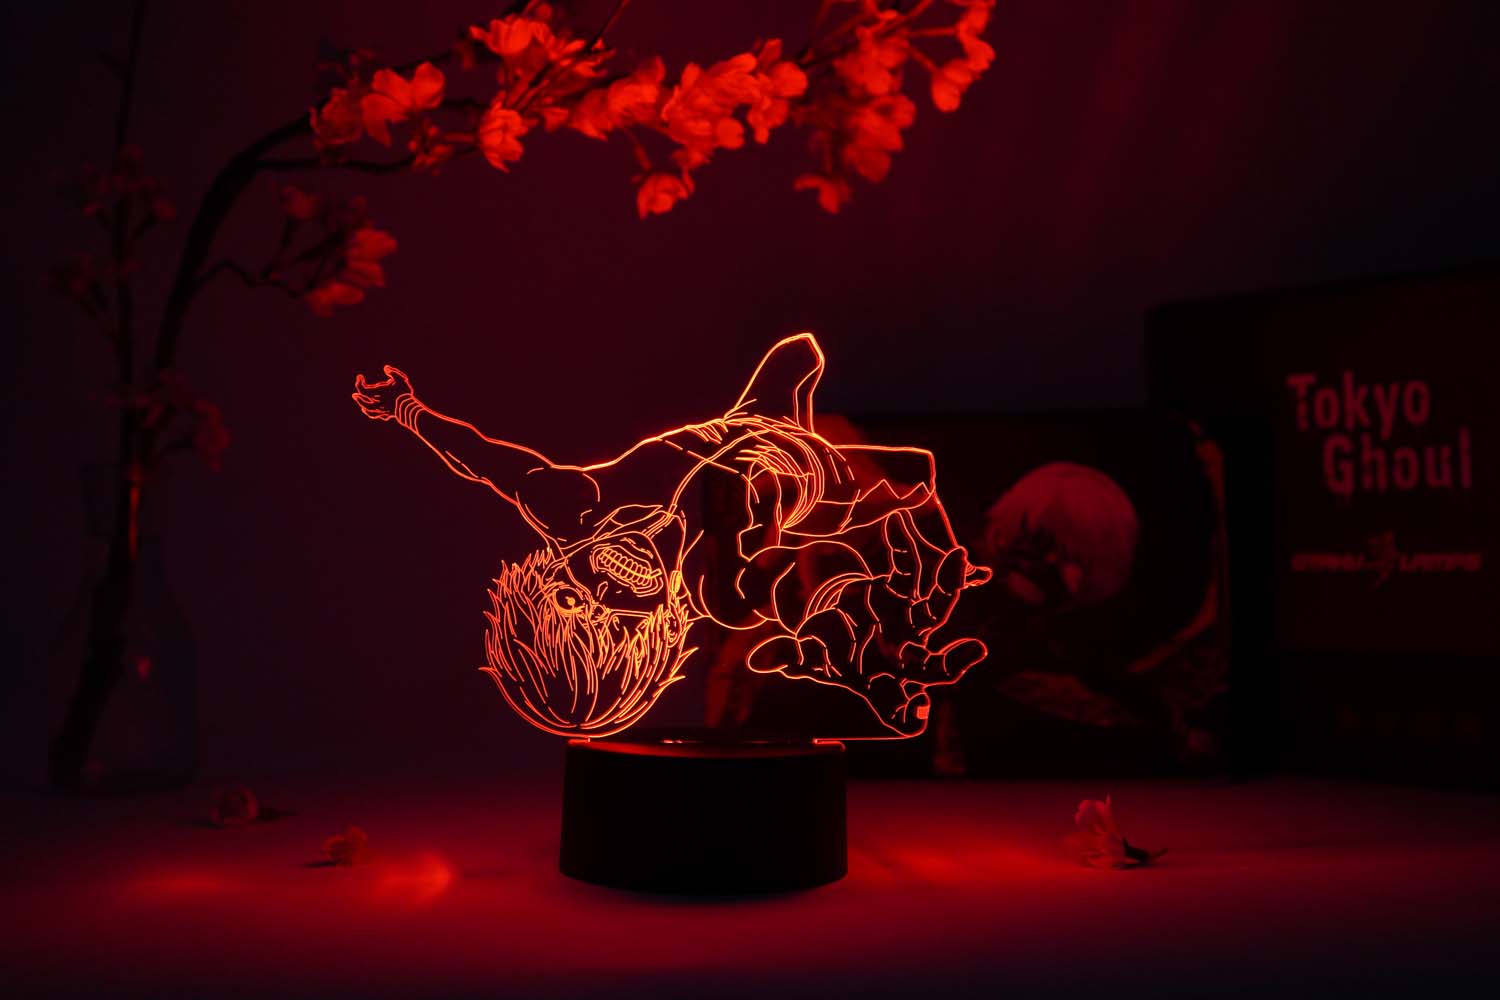 Ken Kaneki Falling Otaku Lamp (Tokyo Ghoul)